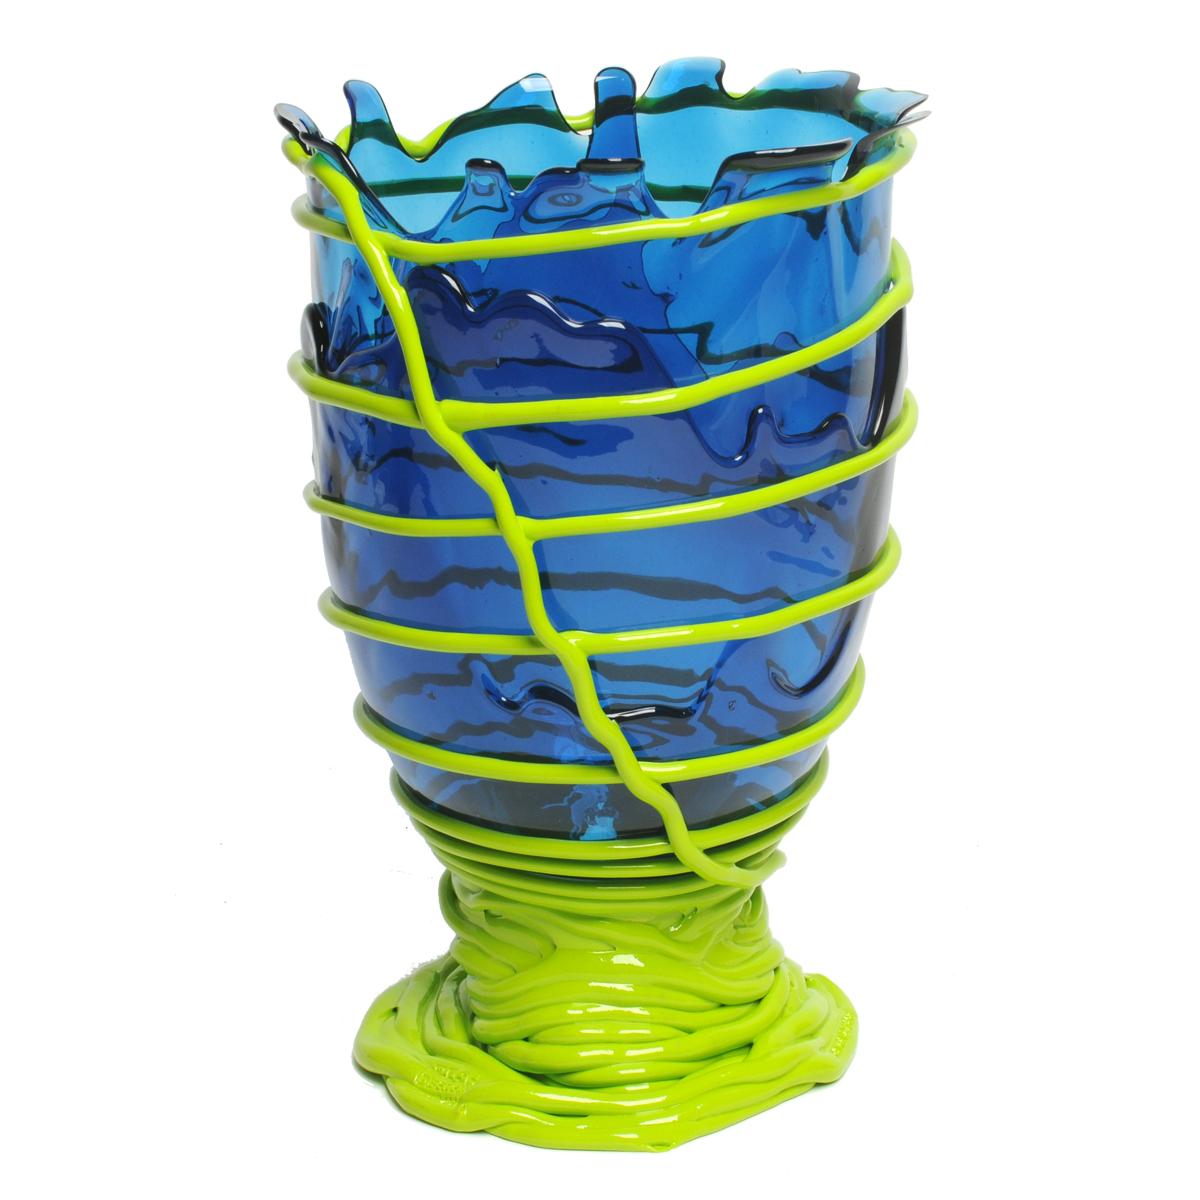 Vase Pompitu II, blau, säuregrün.

Vase aus weichem Harz, entworfen von Gaetano Pesce im Jahr 1995 für die Collection'S Fish Design.

Maße: M ø 16cm x H 26cm

Andere Größen verfügbar

Farben: Blau, Säuregrün.
Vase aus weichem Harz,